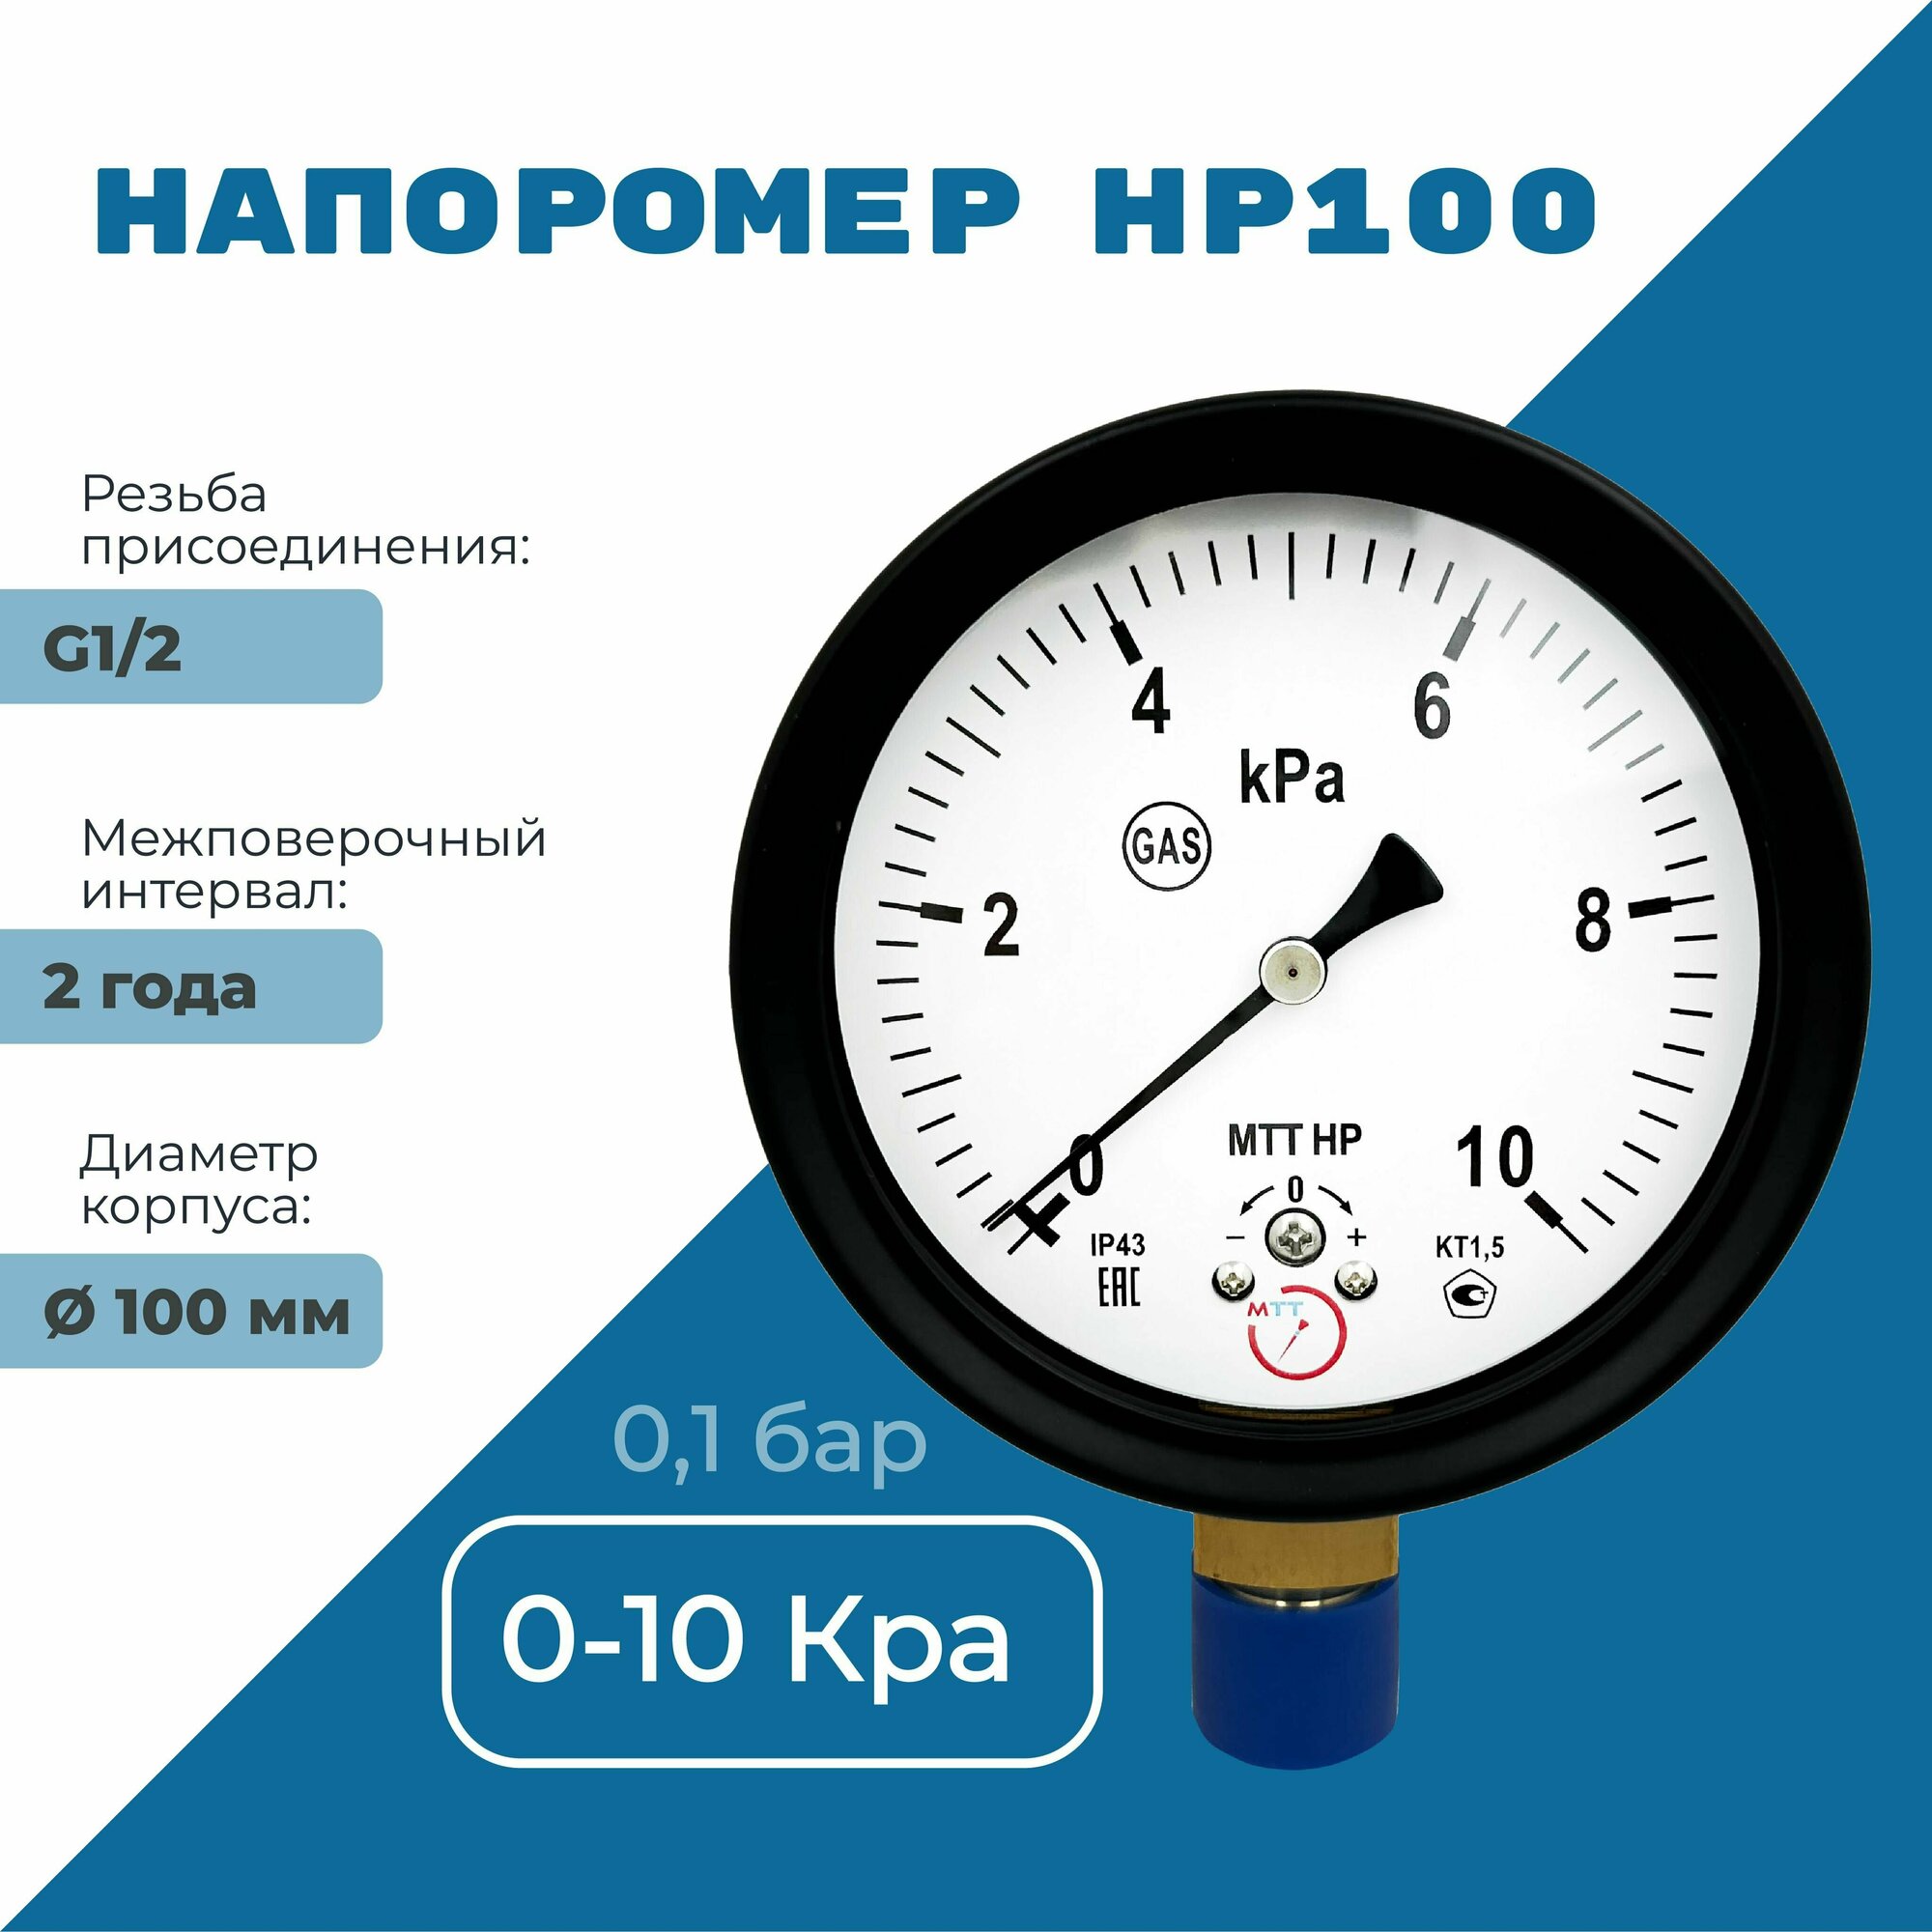 Напоромер НР100 давление от 0 до 10 кПа, резьба BSP1/2, класс точности 1,5, диаметр корпуса 100 мм, поверка на 2 года